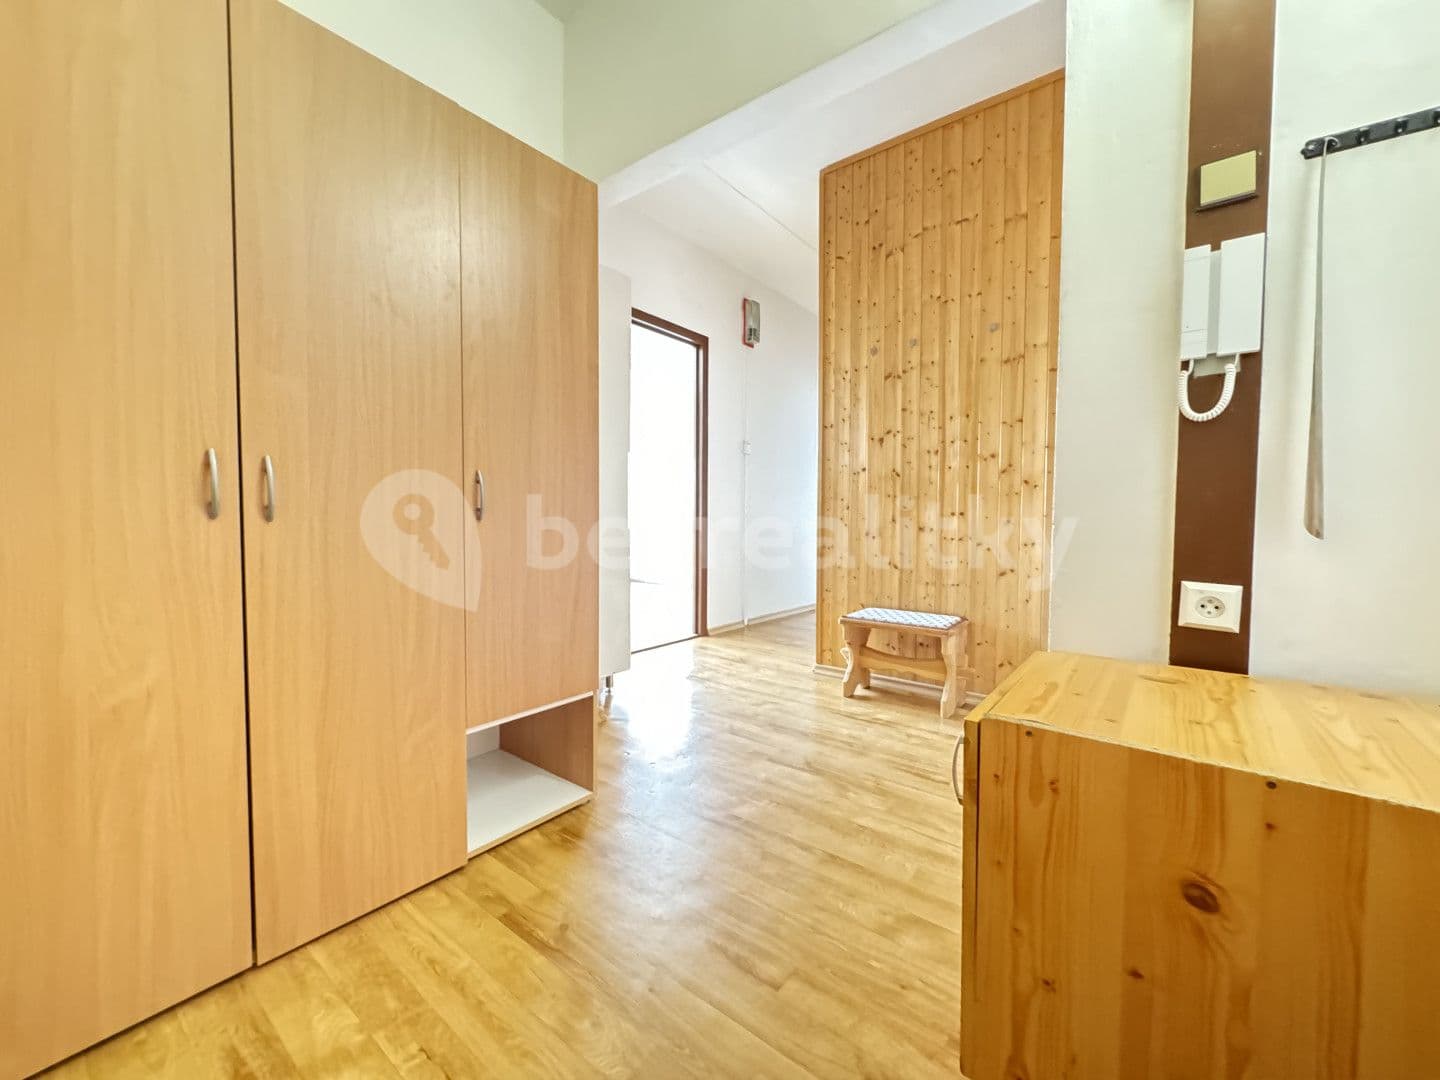 1 bedroom with open-plan kitchen flat for sale, 43 m², Sídliště, Velešín, Jihočeský Region